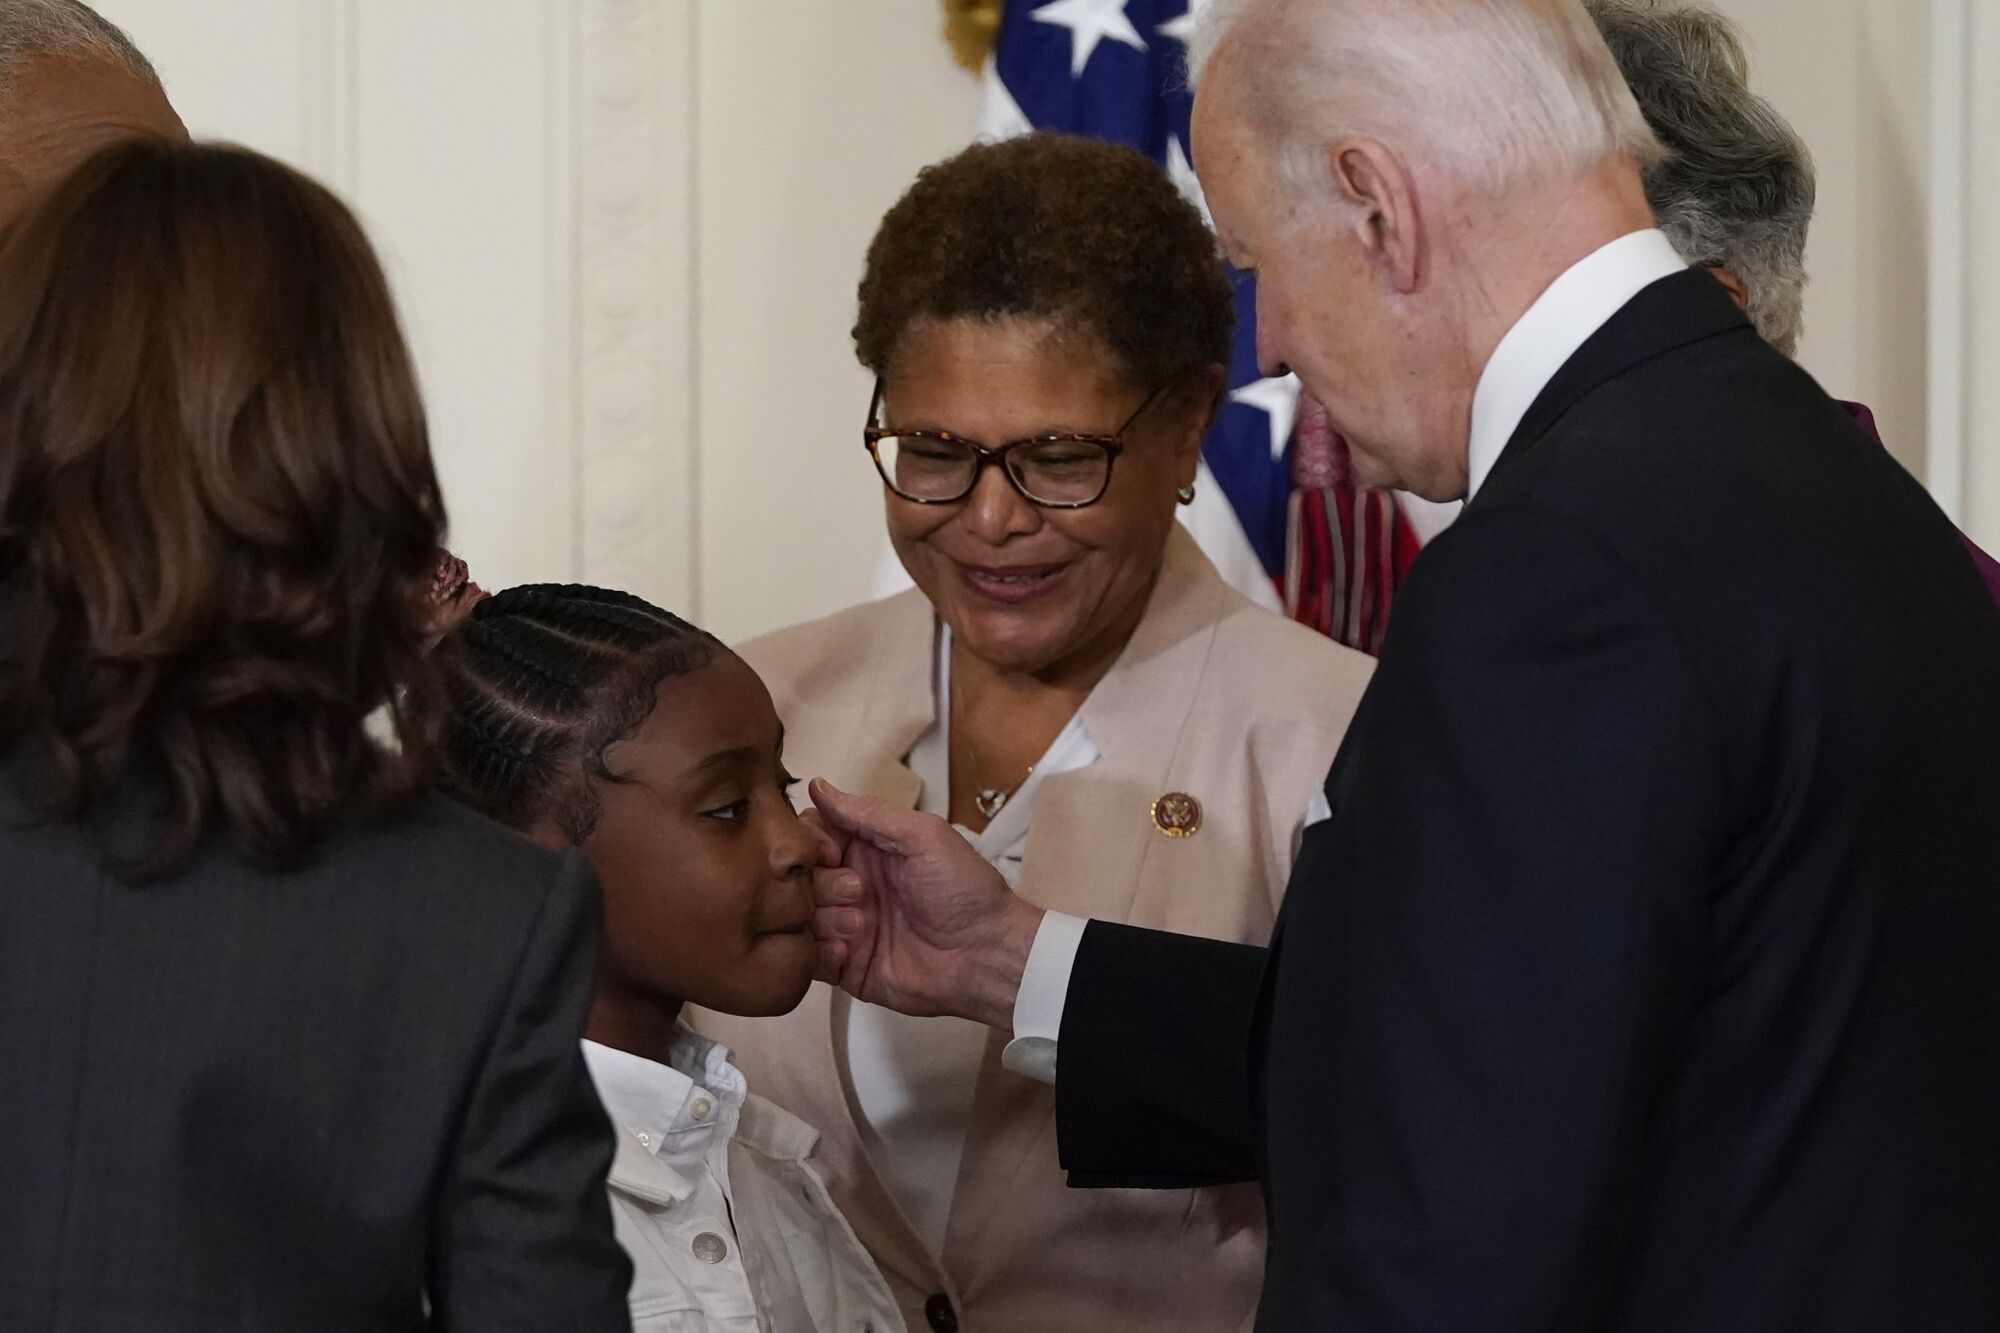 President Biden touches a little girl's cheek as Rep. Karen Bass smiles.